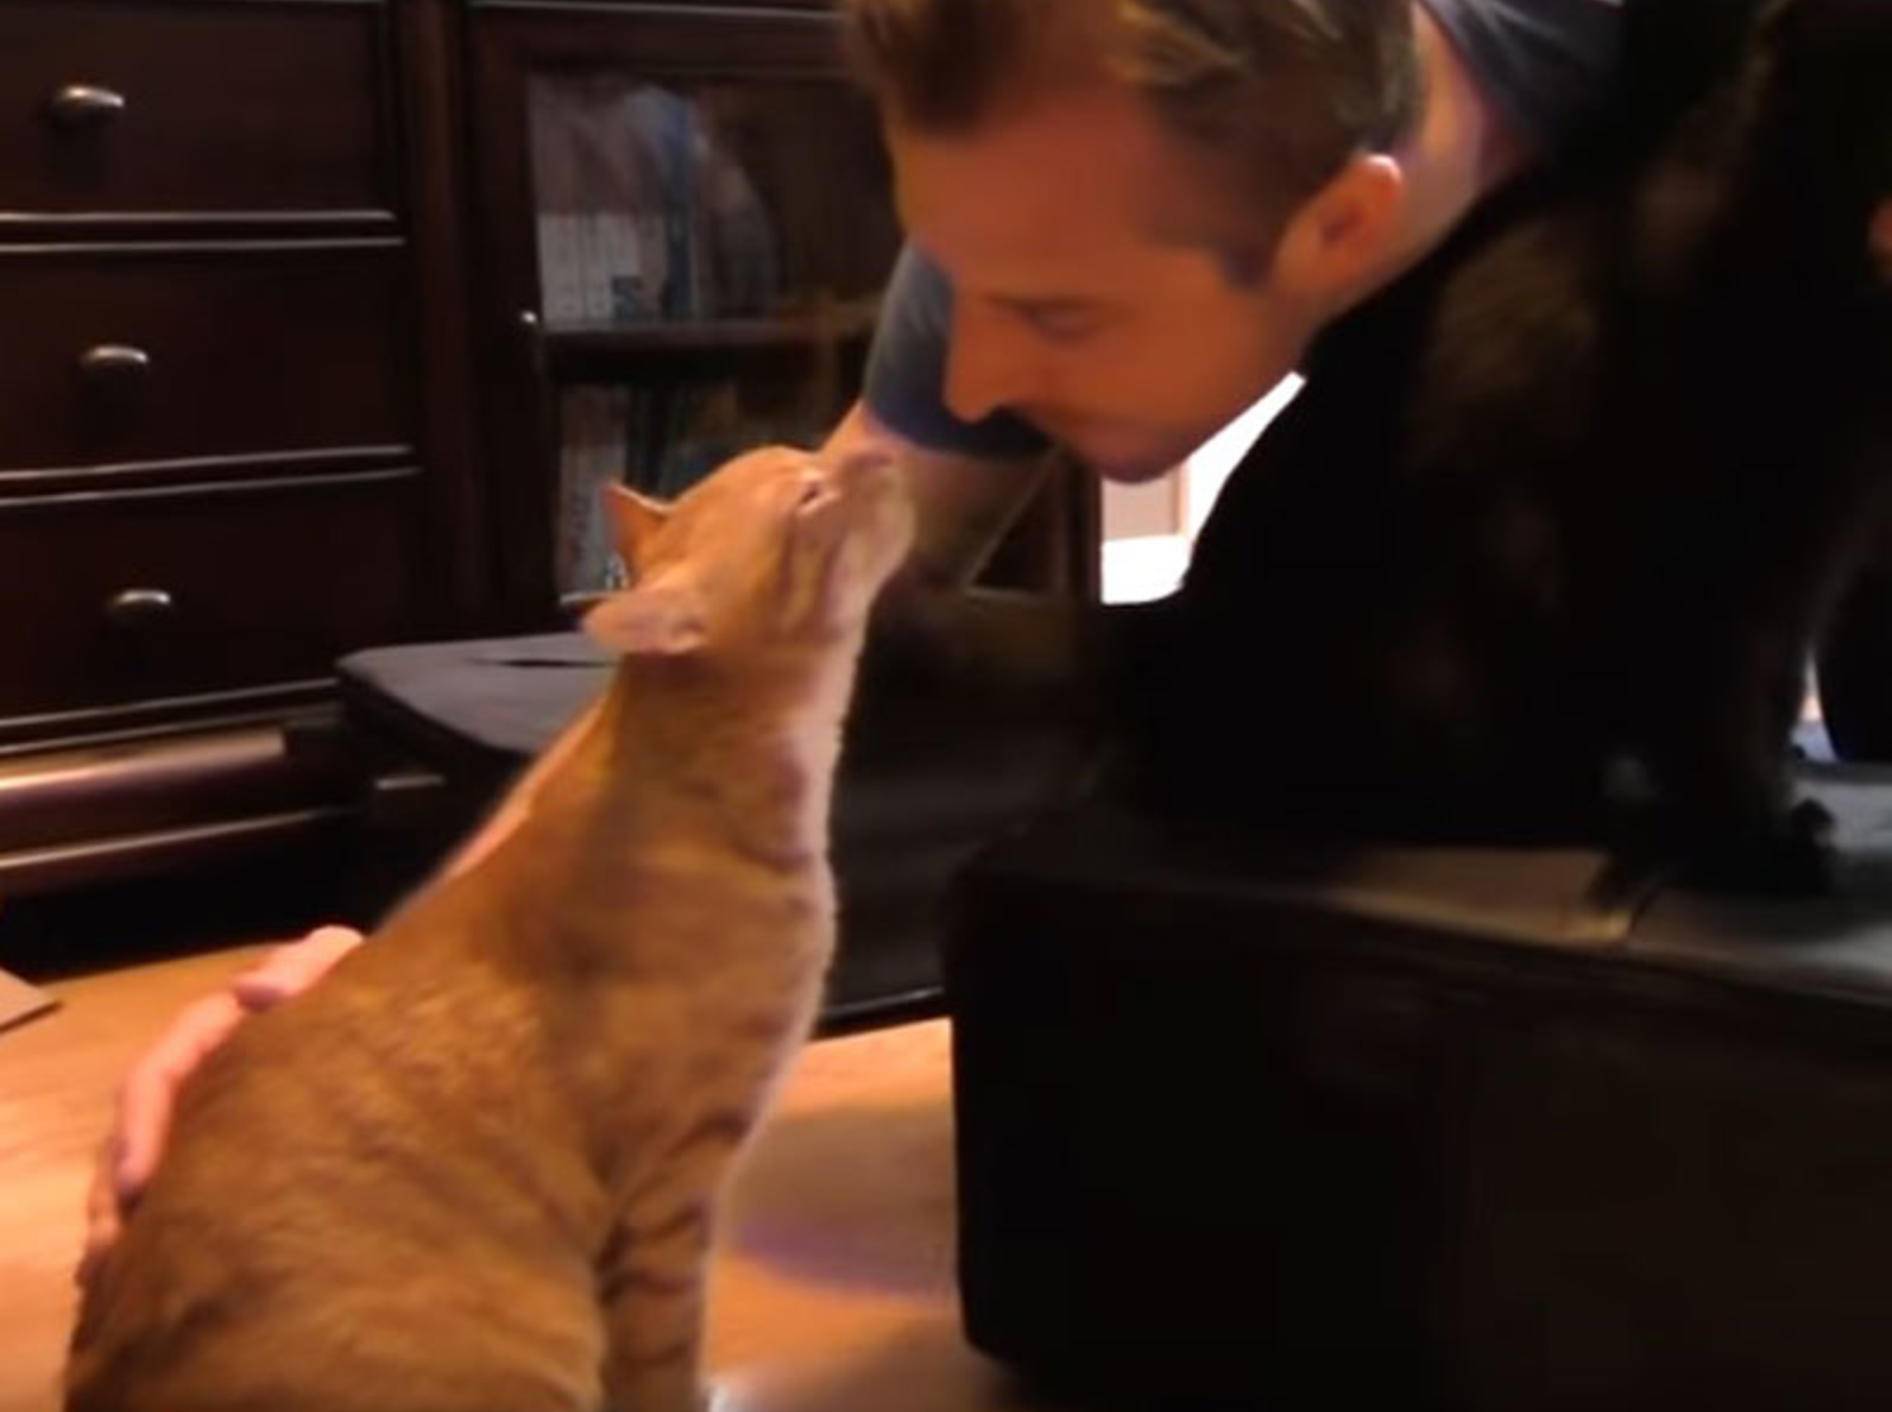 Mensch und Katze: Liebe, die auf Gegenseitigkeit beruht – YouTube / Cole and Marmalade